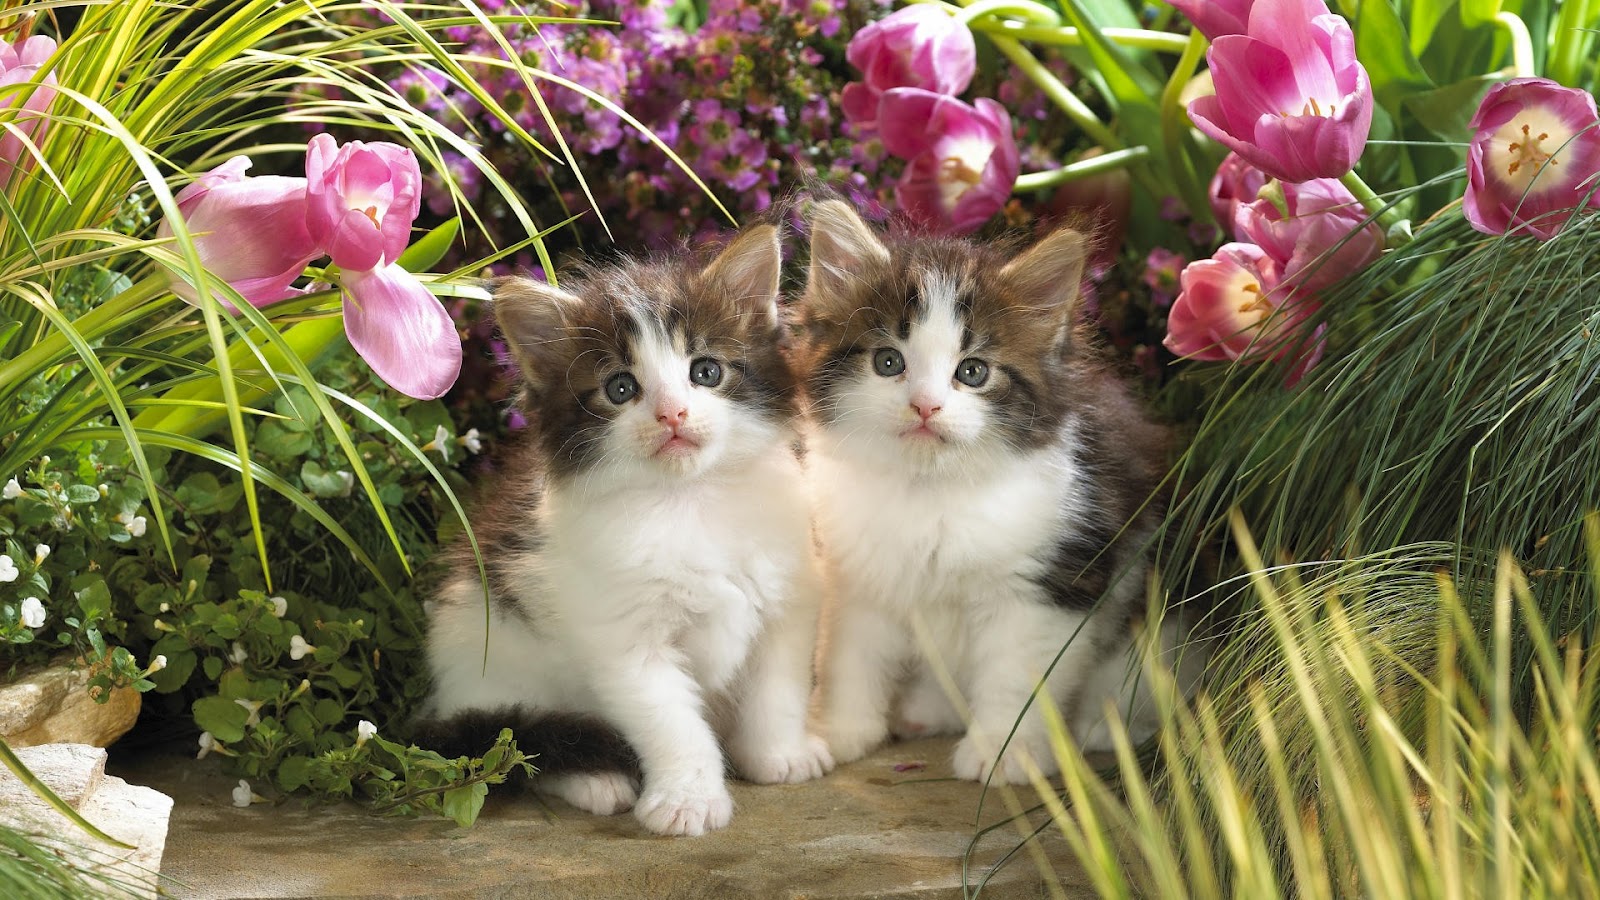 Cute Kittens Between Tulips And Grass HD Wallpaper